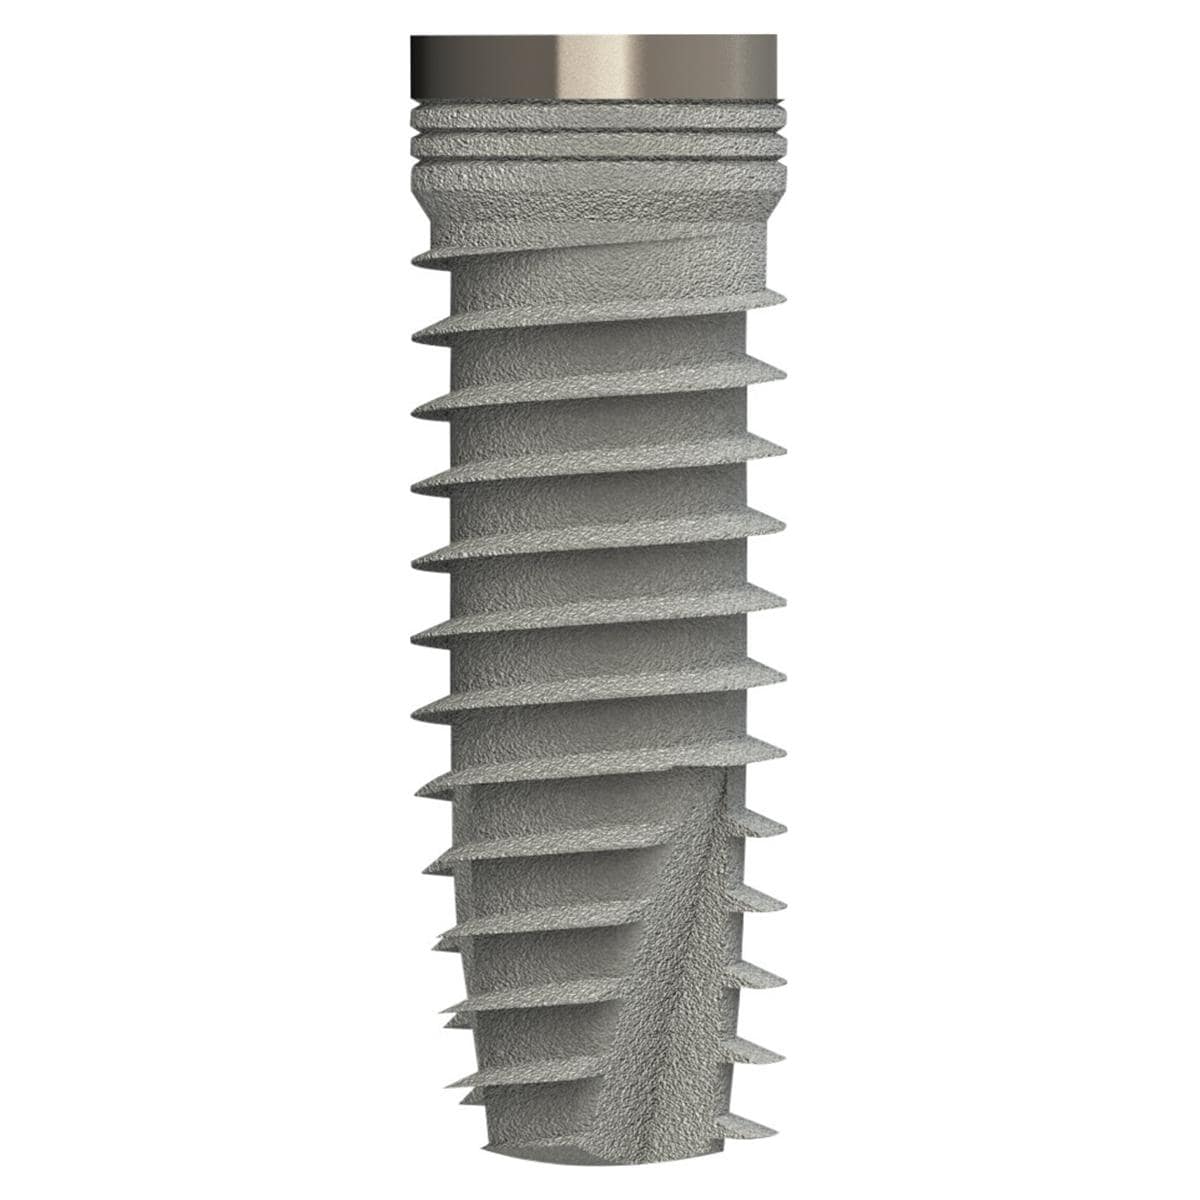 TL Implantat BONITex® P Ø 3,8 mm - Länge 12 mm